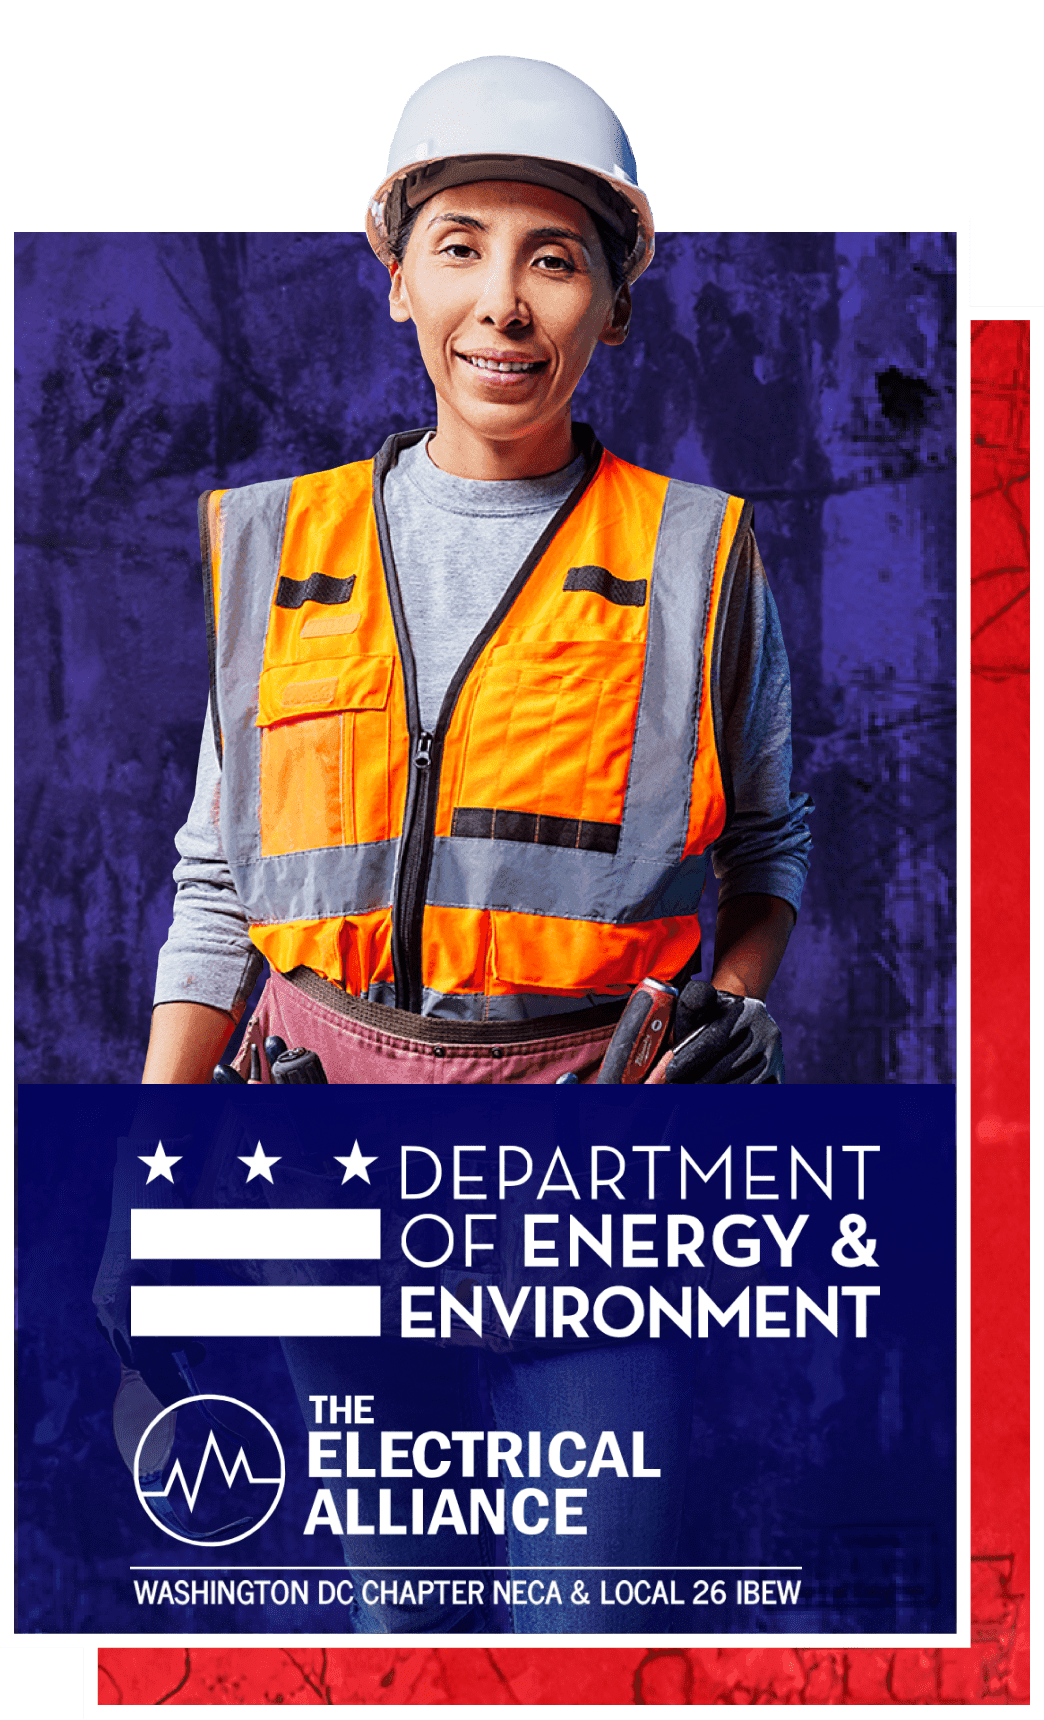 Una mujer con casco y chaleco de alta visibilidad y los logotipos del Departamento de Energía y Medio Ambiente y 'The Electrical Alliance' Washington DC Chapter NECA & Local 26 IBEW